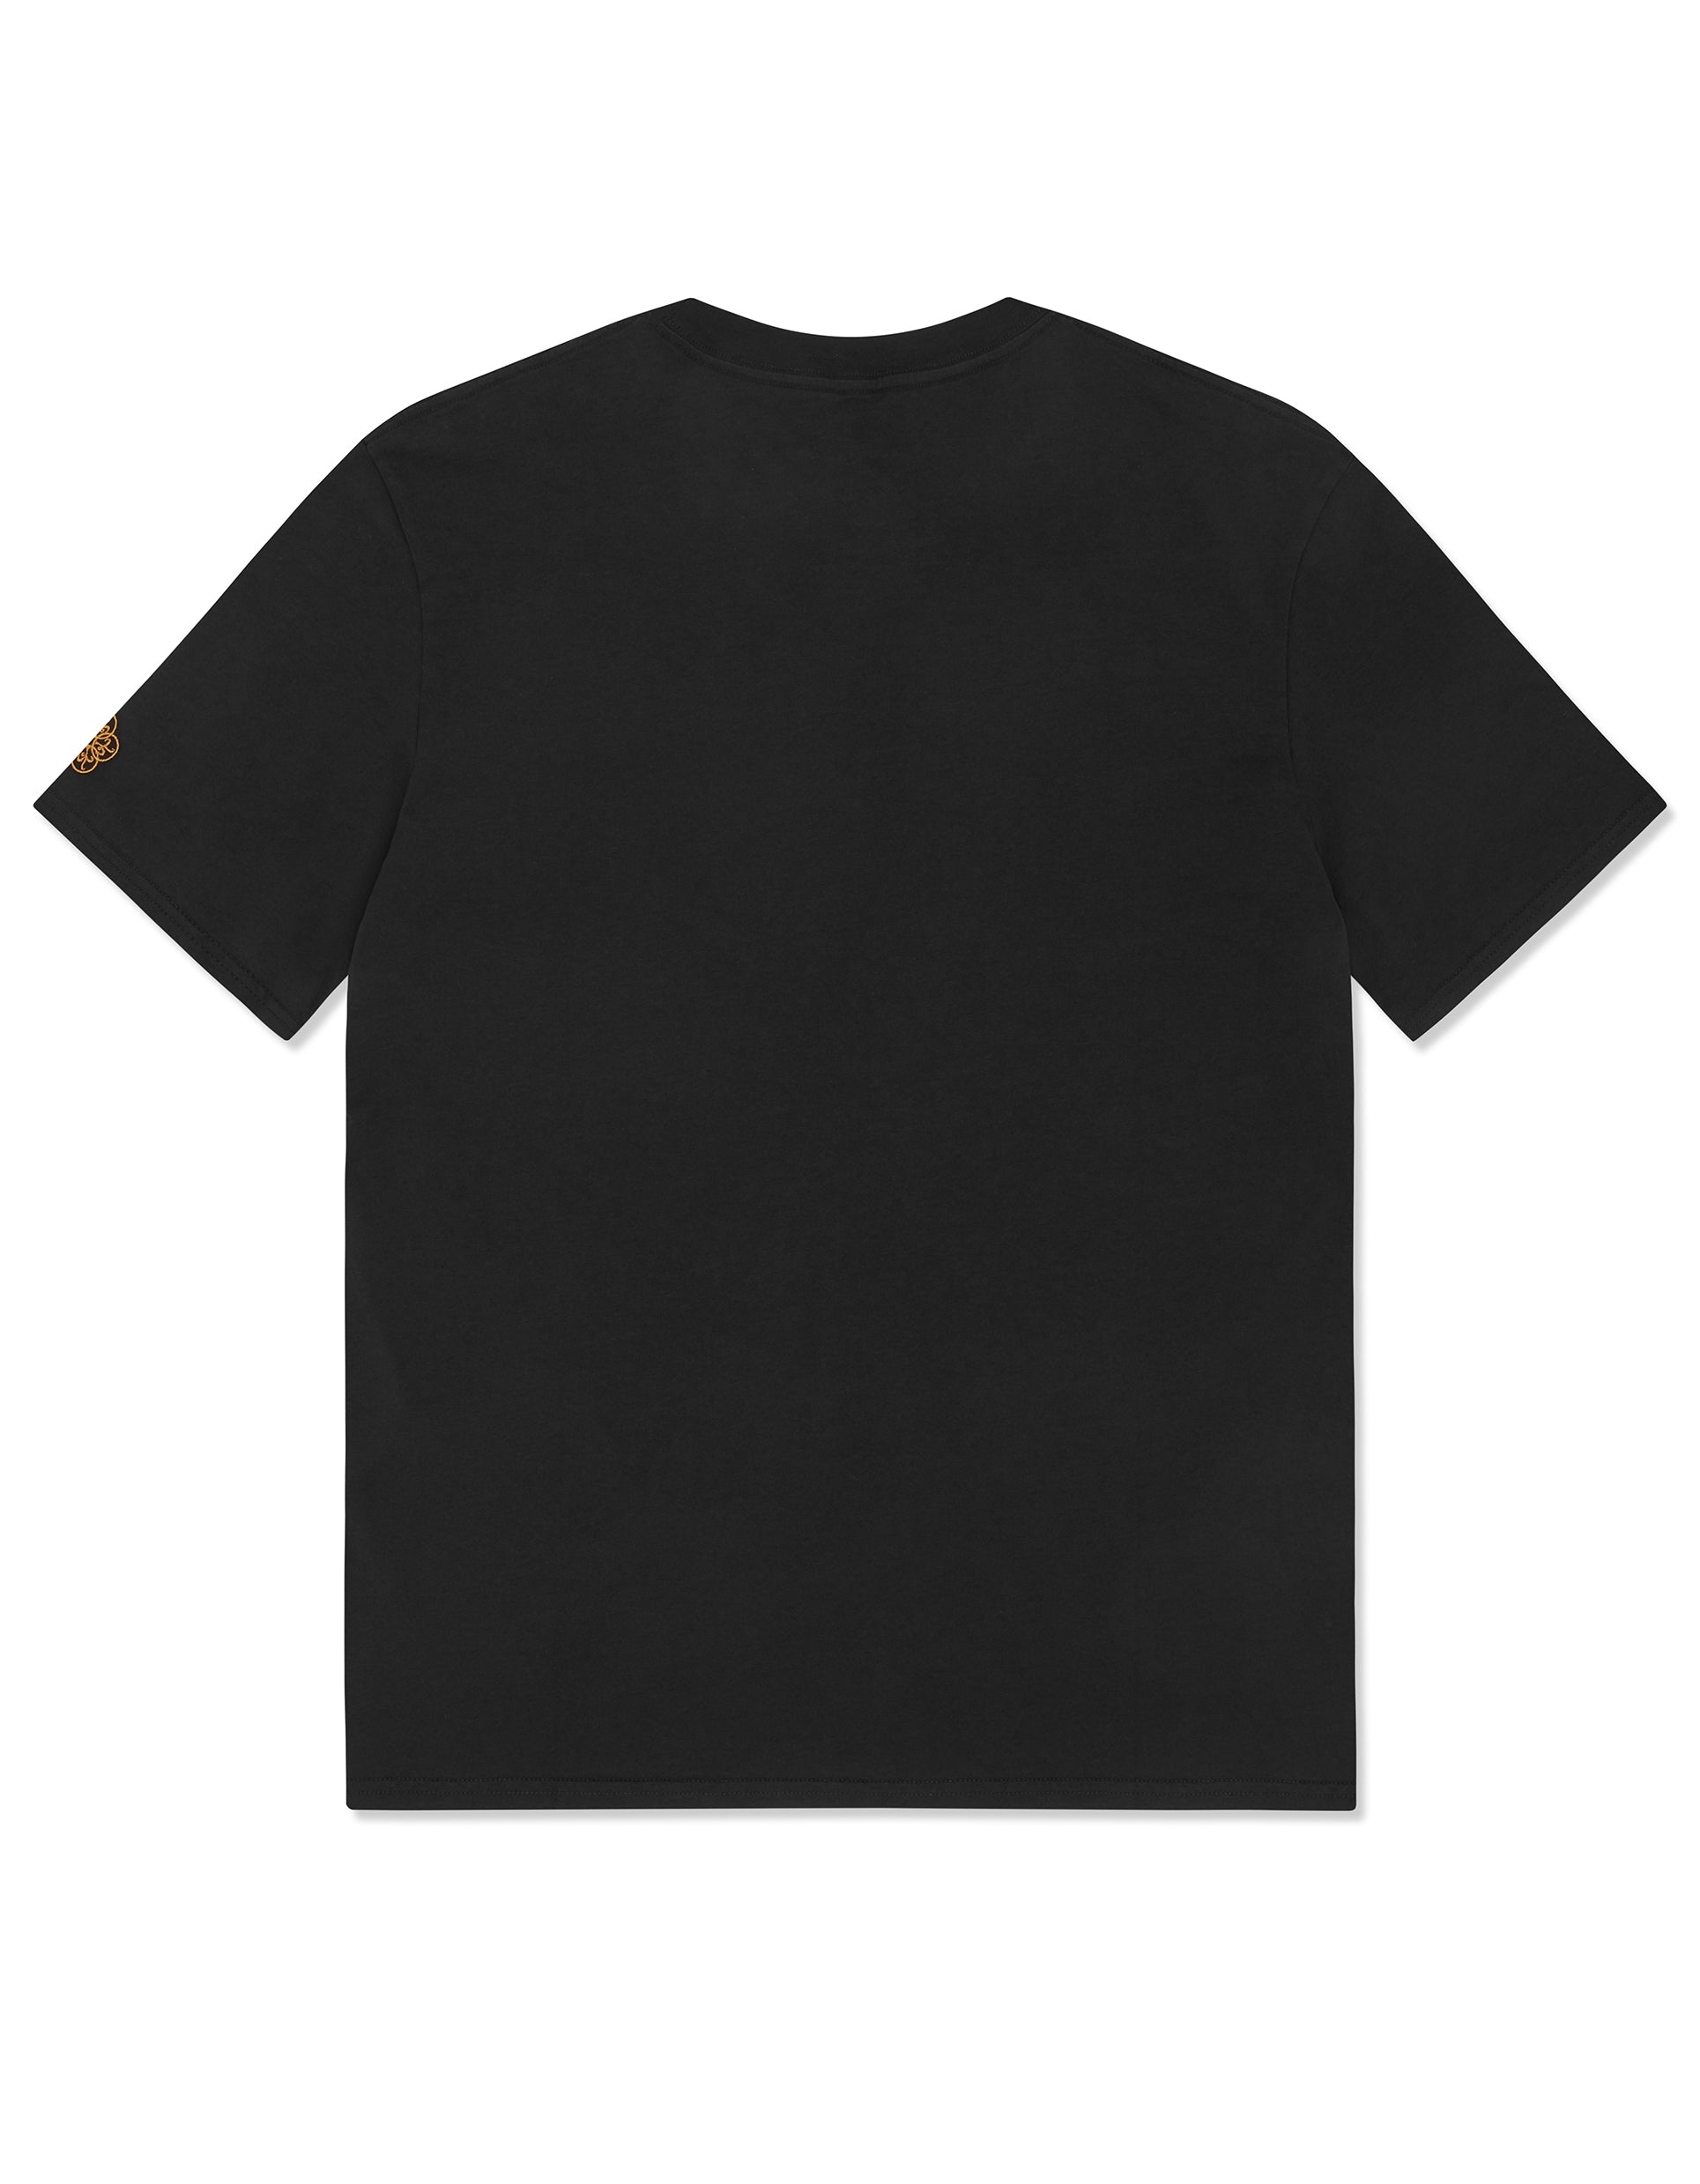 black t shirt for men